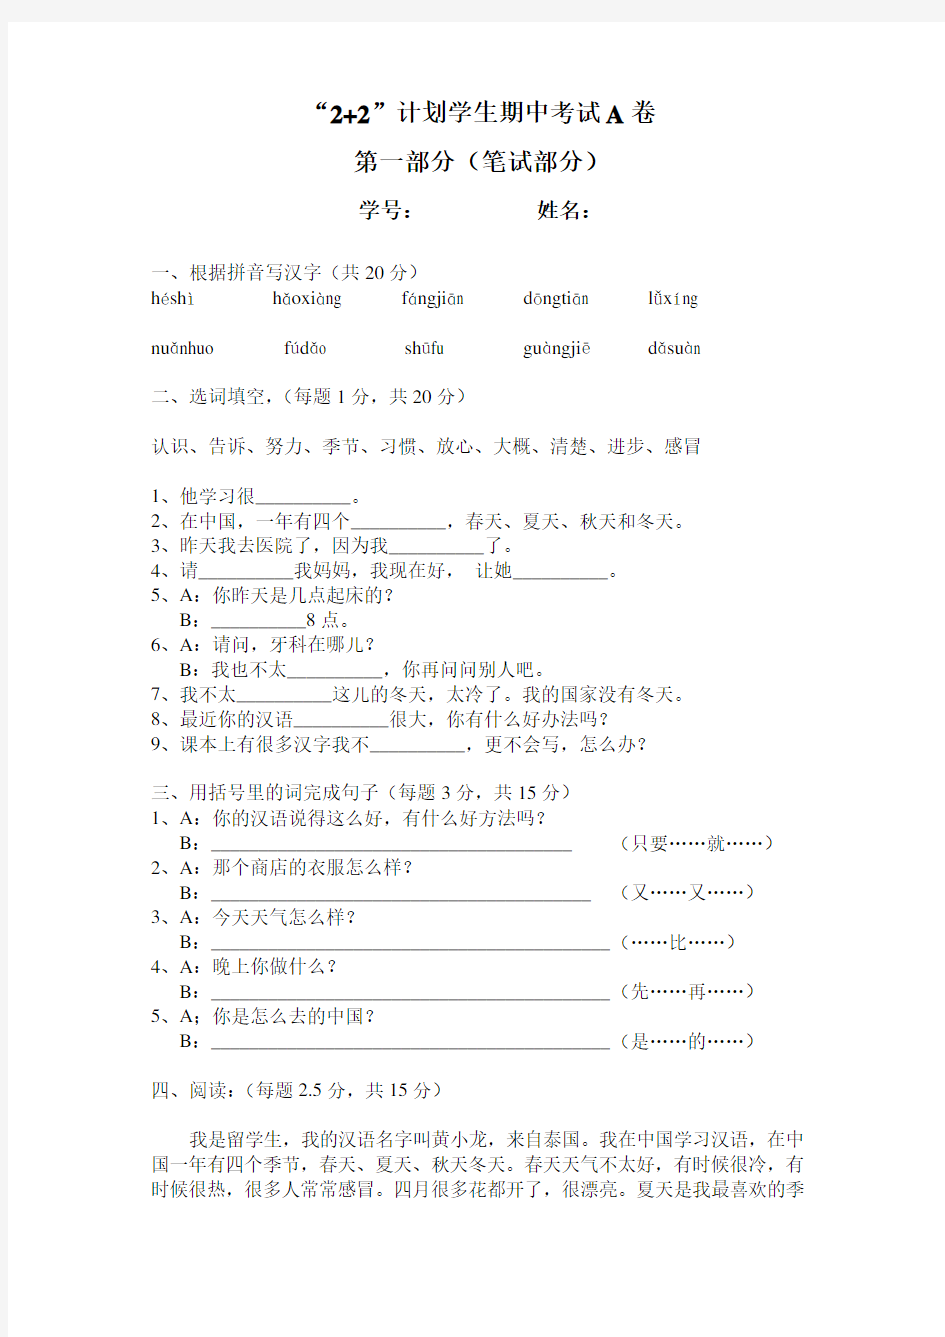 初级汉语口语学生考试